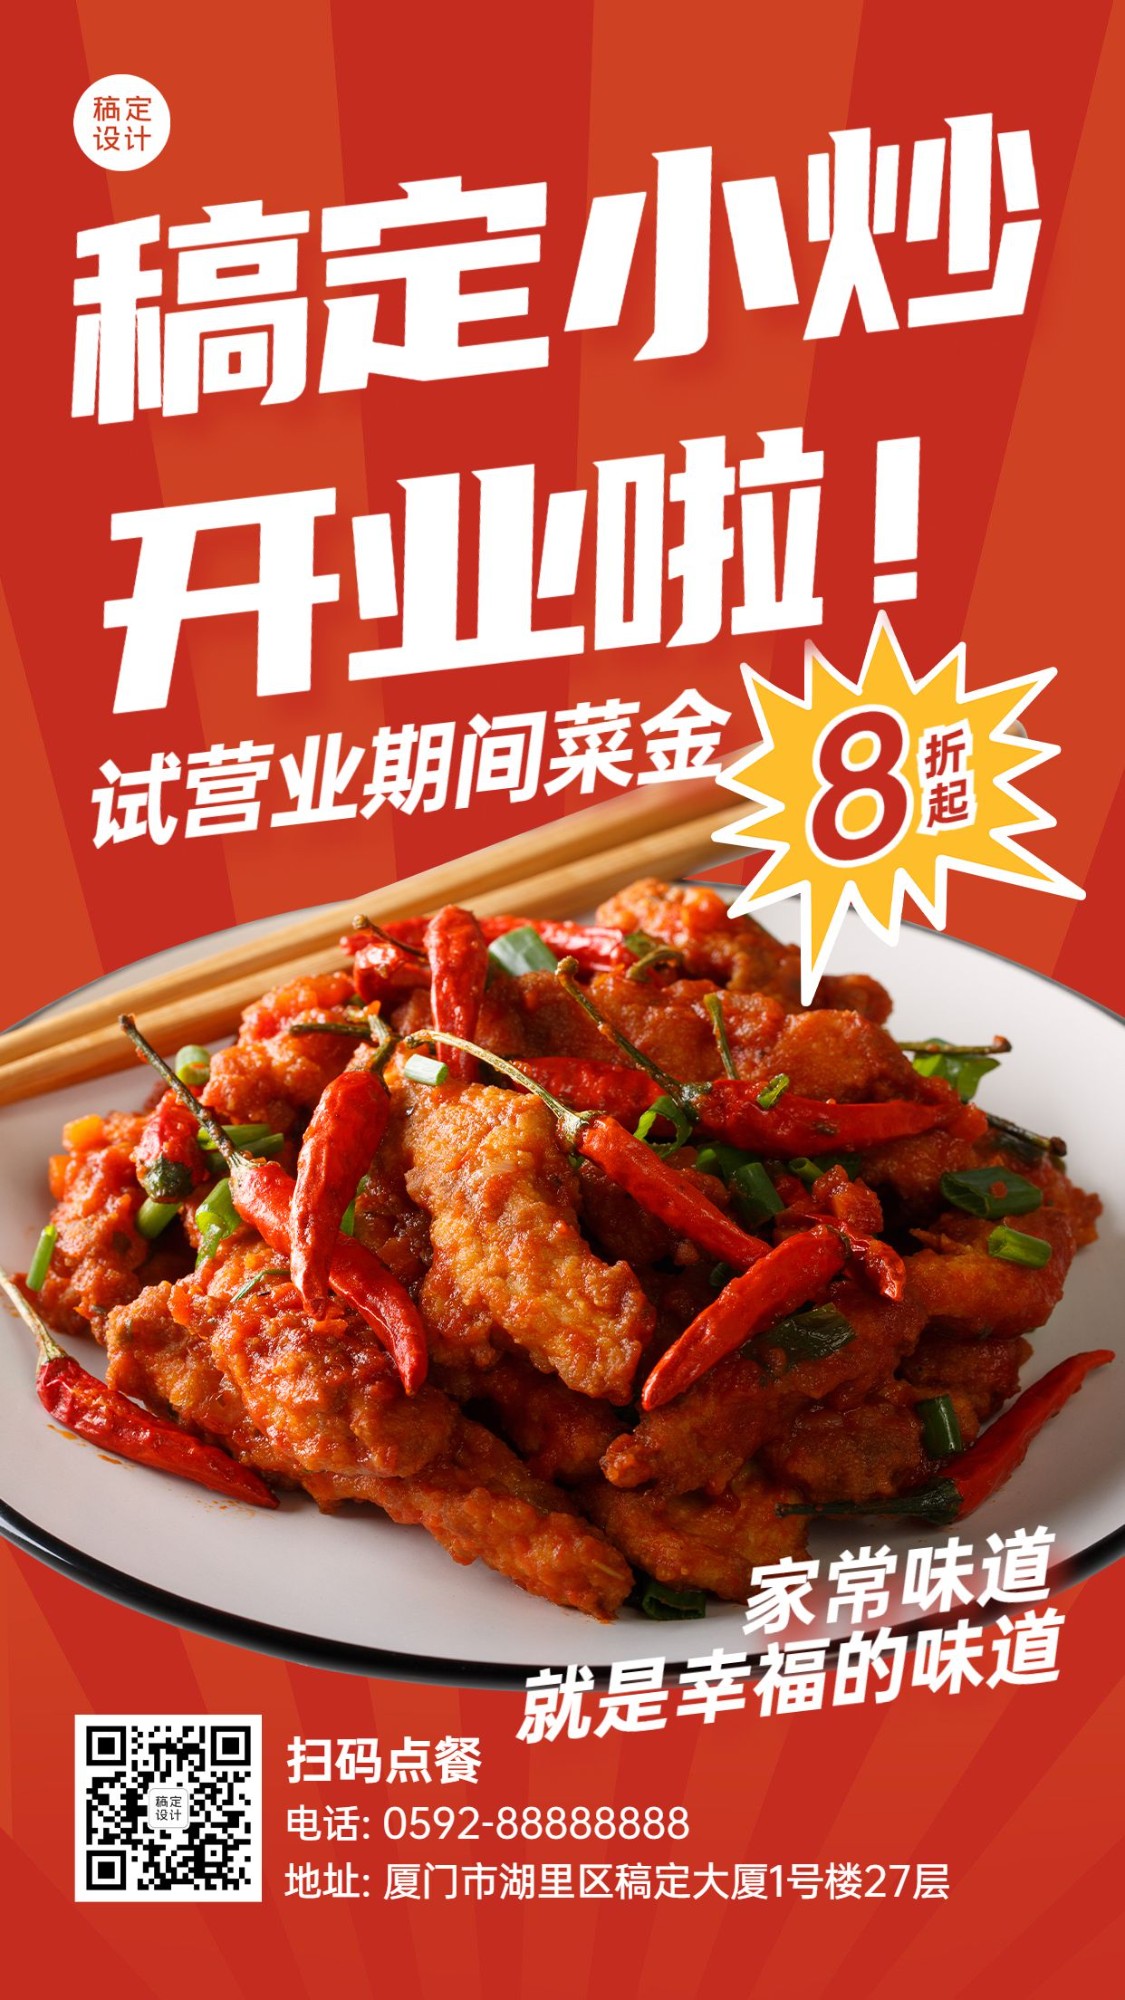 中餐正餐产品营销实景竖版海报